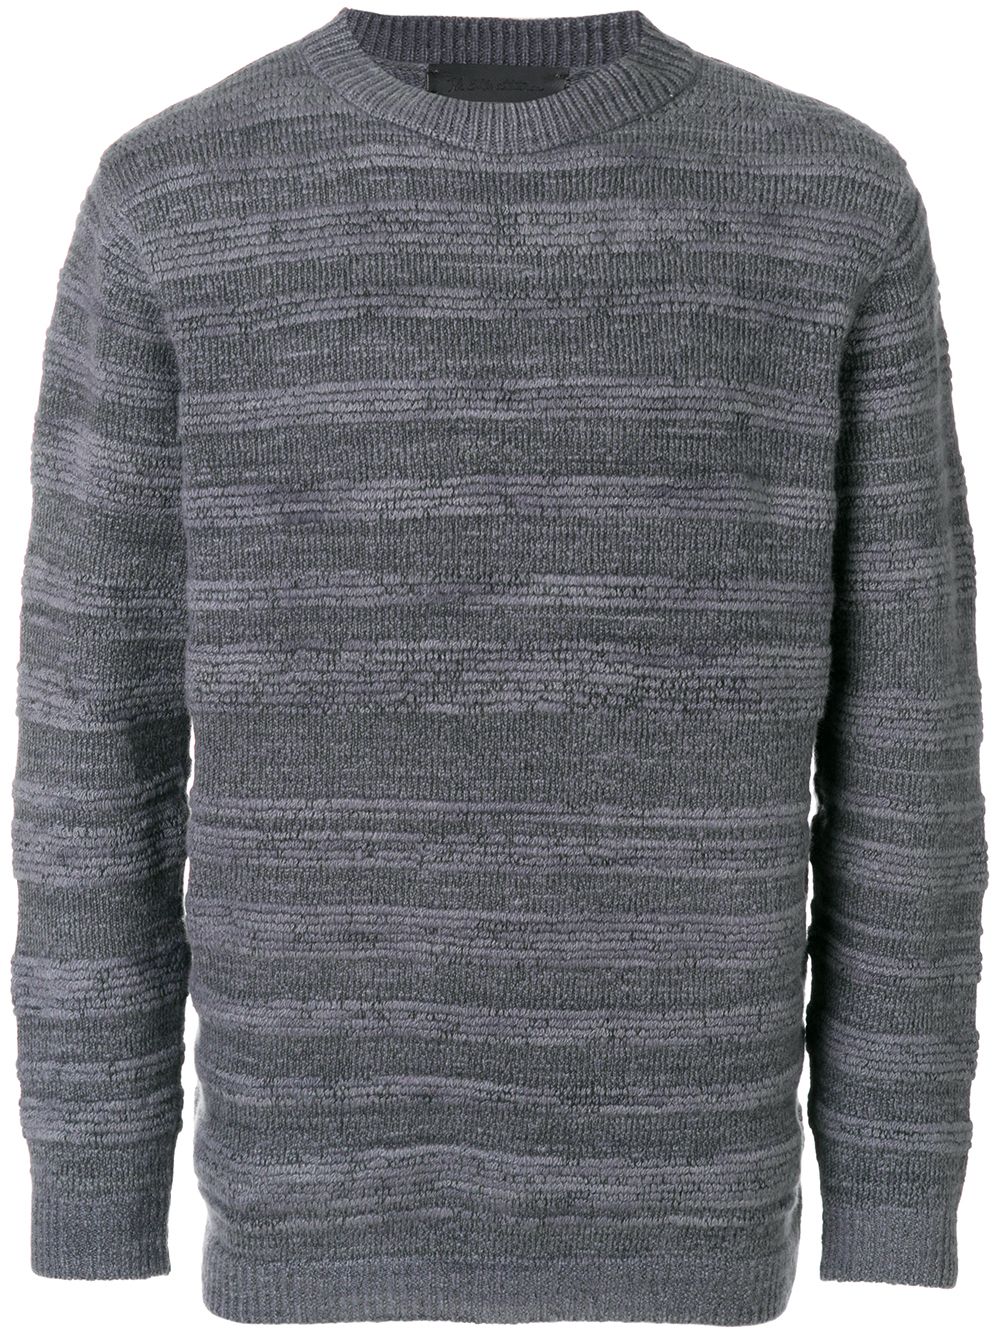 Серый полосатый свитер мужской